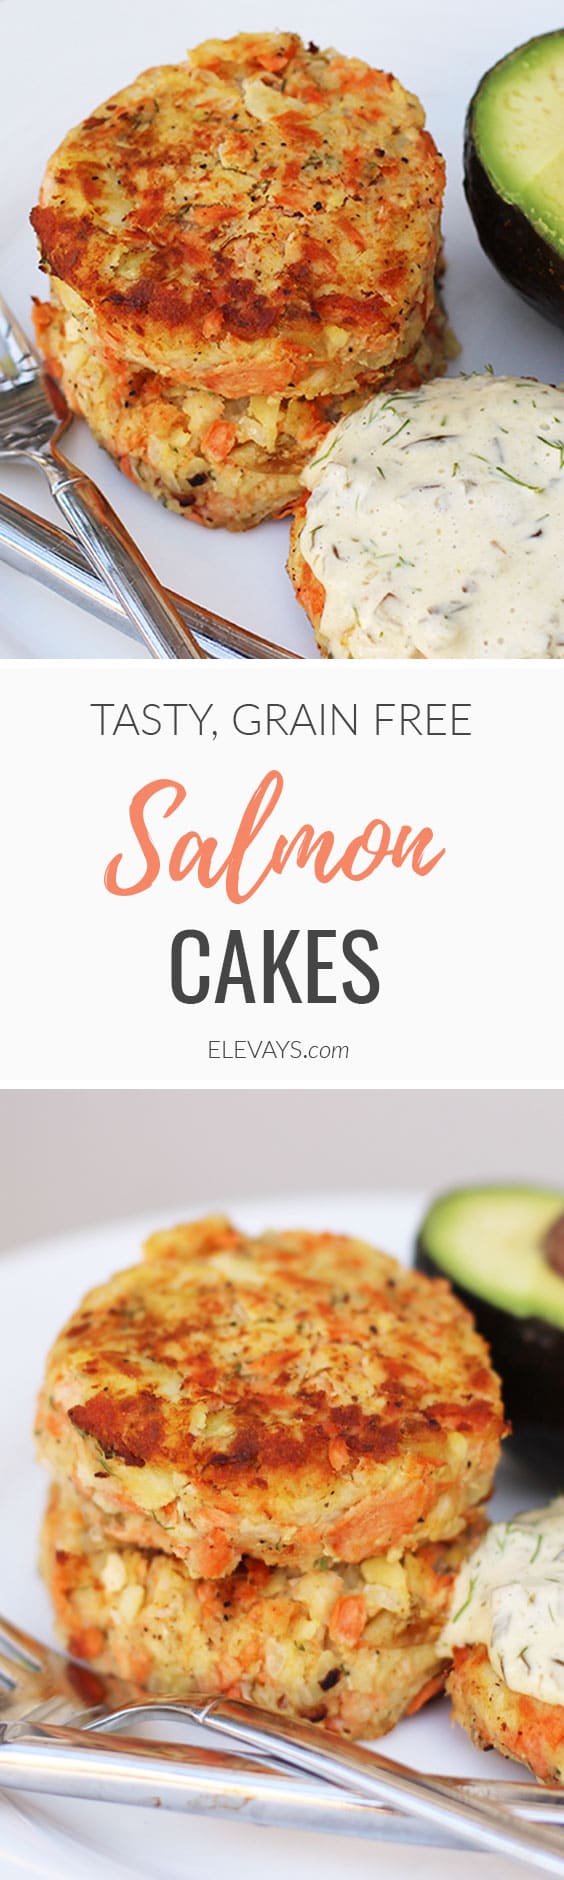 Tasty-Grain-Free-Salmon-Cakes